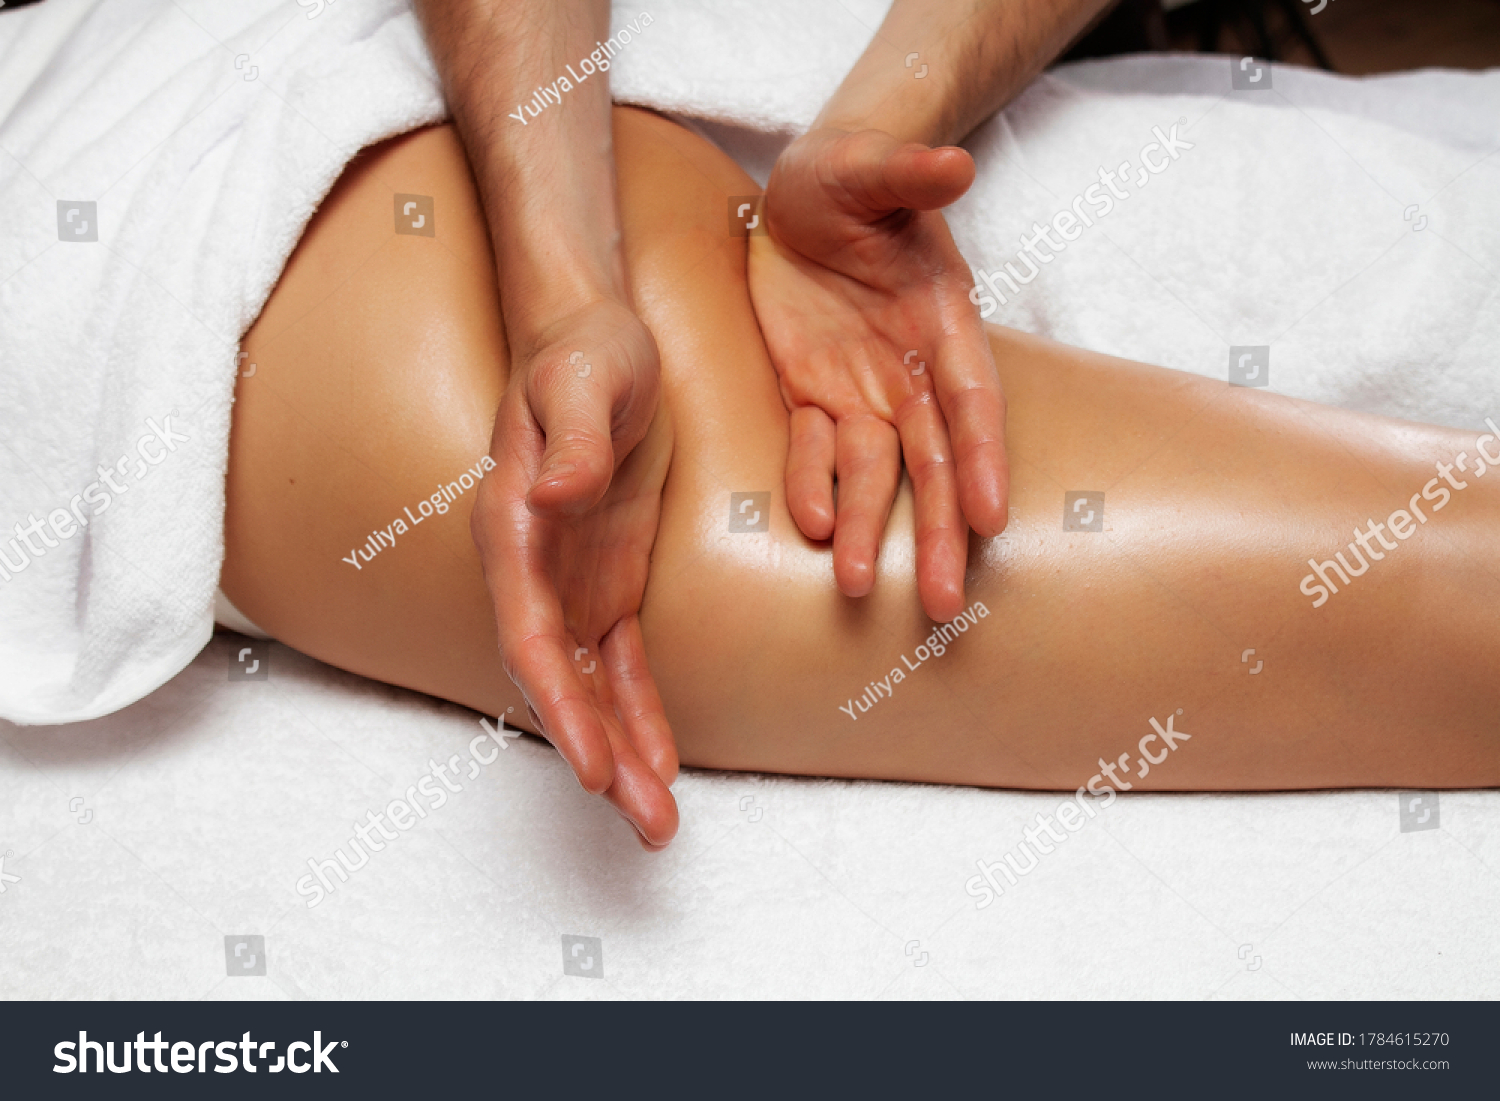 Важно, чтобы после баночного массажа на теле пациента не оставалось синяков